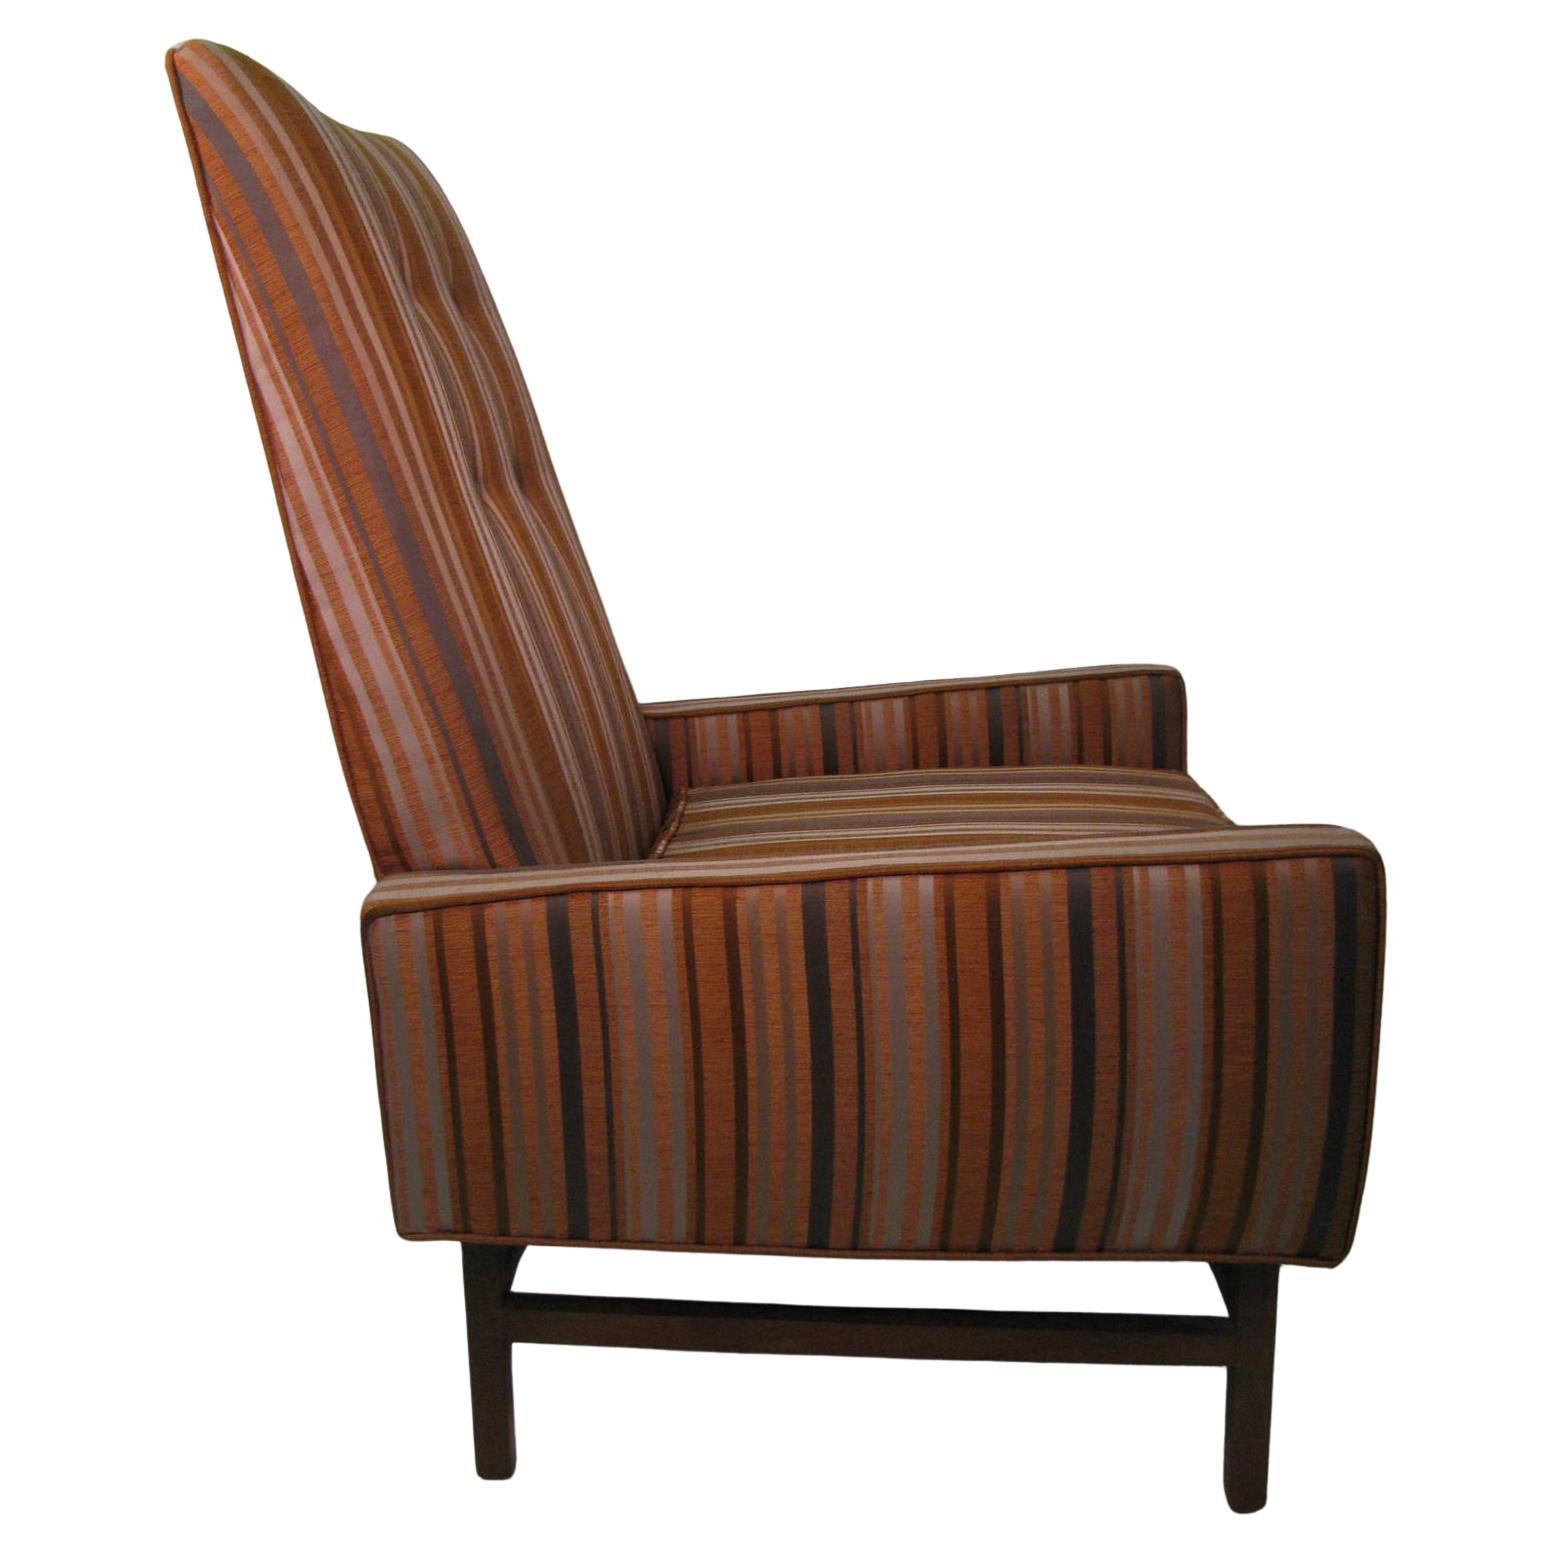 Fabelhafter gepolsterter Lounge-Sessel, verkauft von B. Altman & Co. In ausgezeichnetem Originalzustand mit neuem Schaumstoff im Sitzkissen.